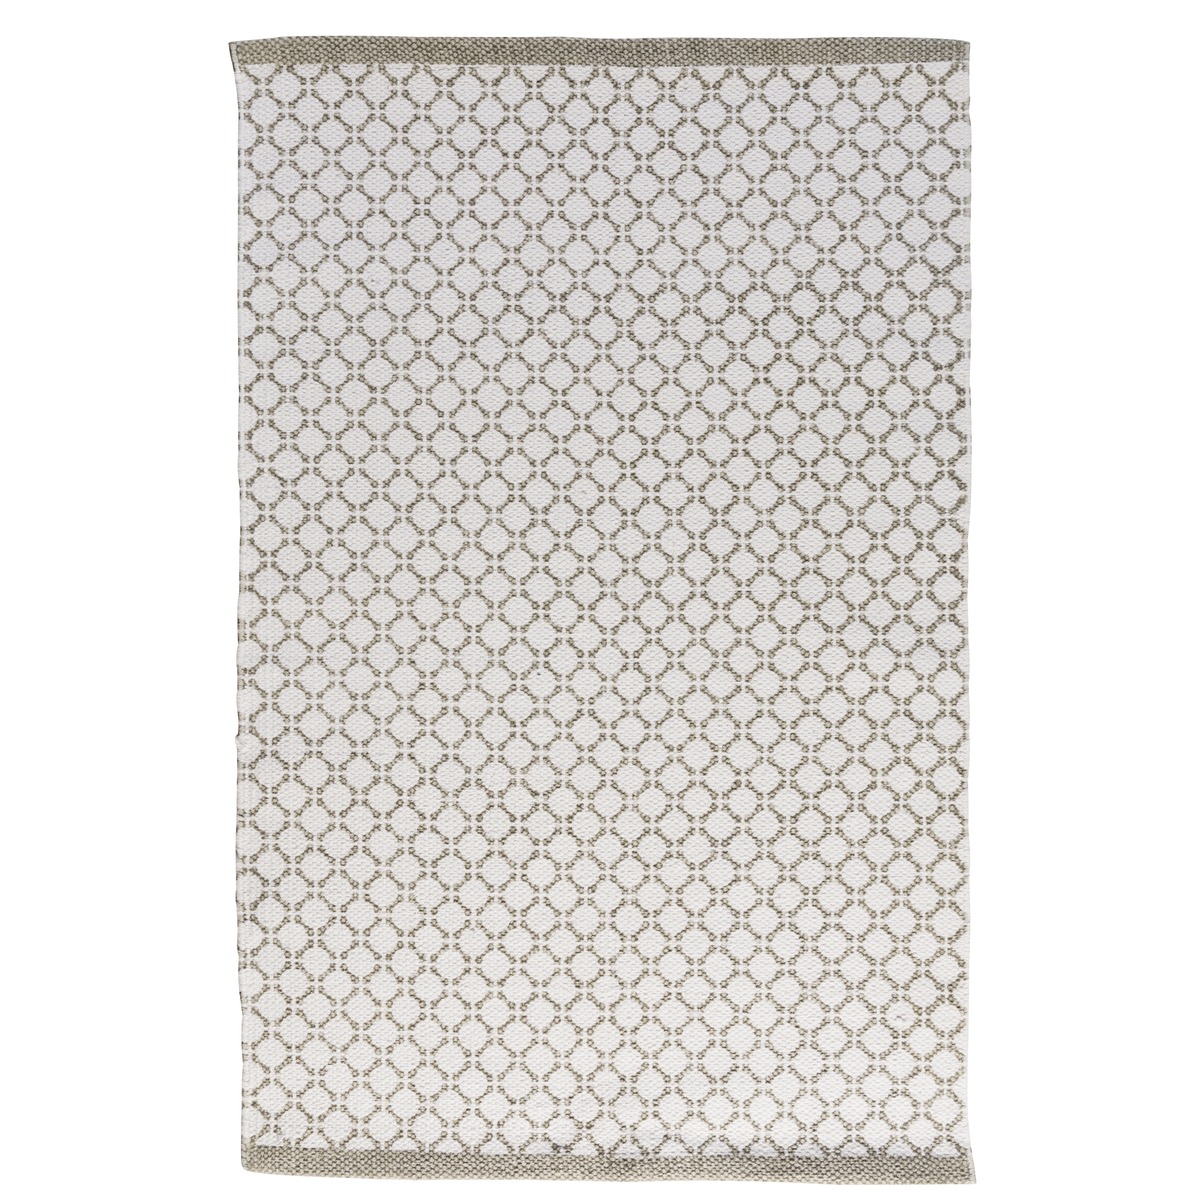 Tapis en coton style ethnique - 60 x 90 cm - Gris clair